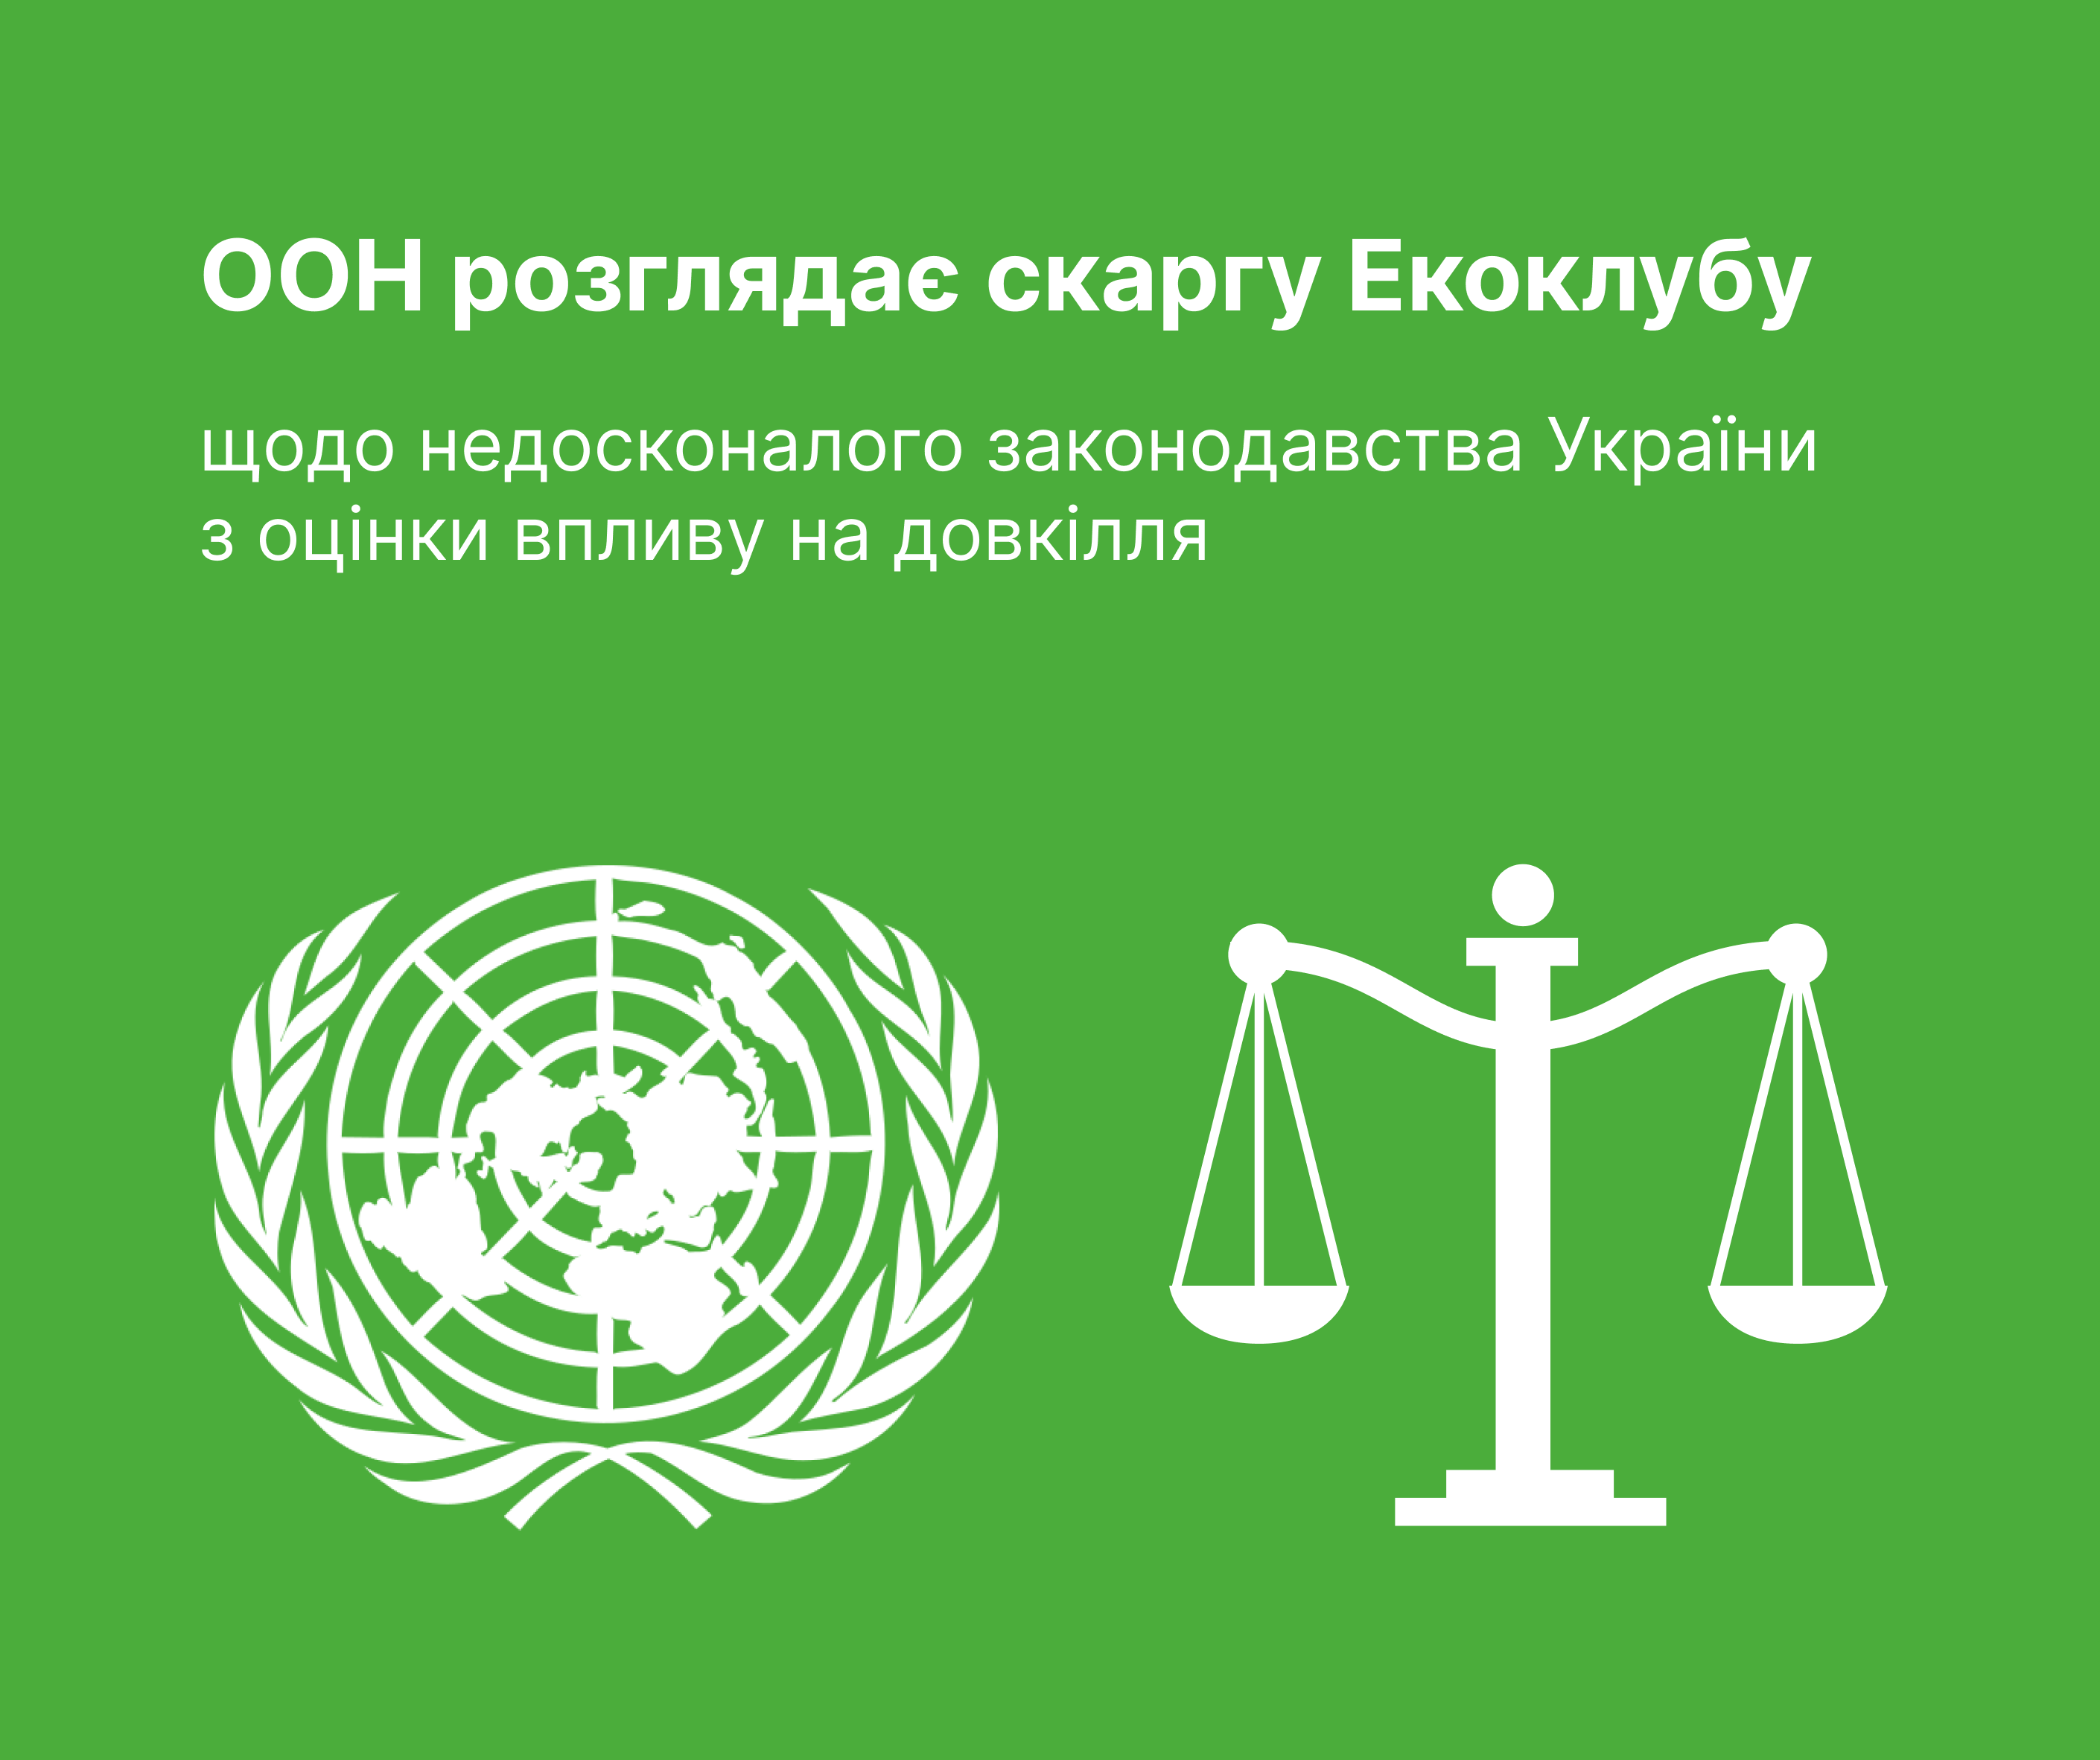 ООН розглядає скаргу Екоклубу щодо недосконалого законодавства України з оцінки впливу на довкілля